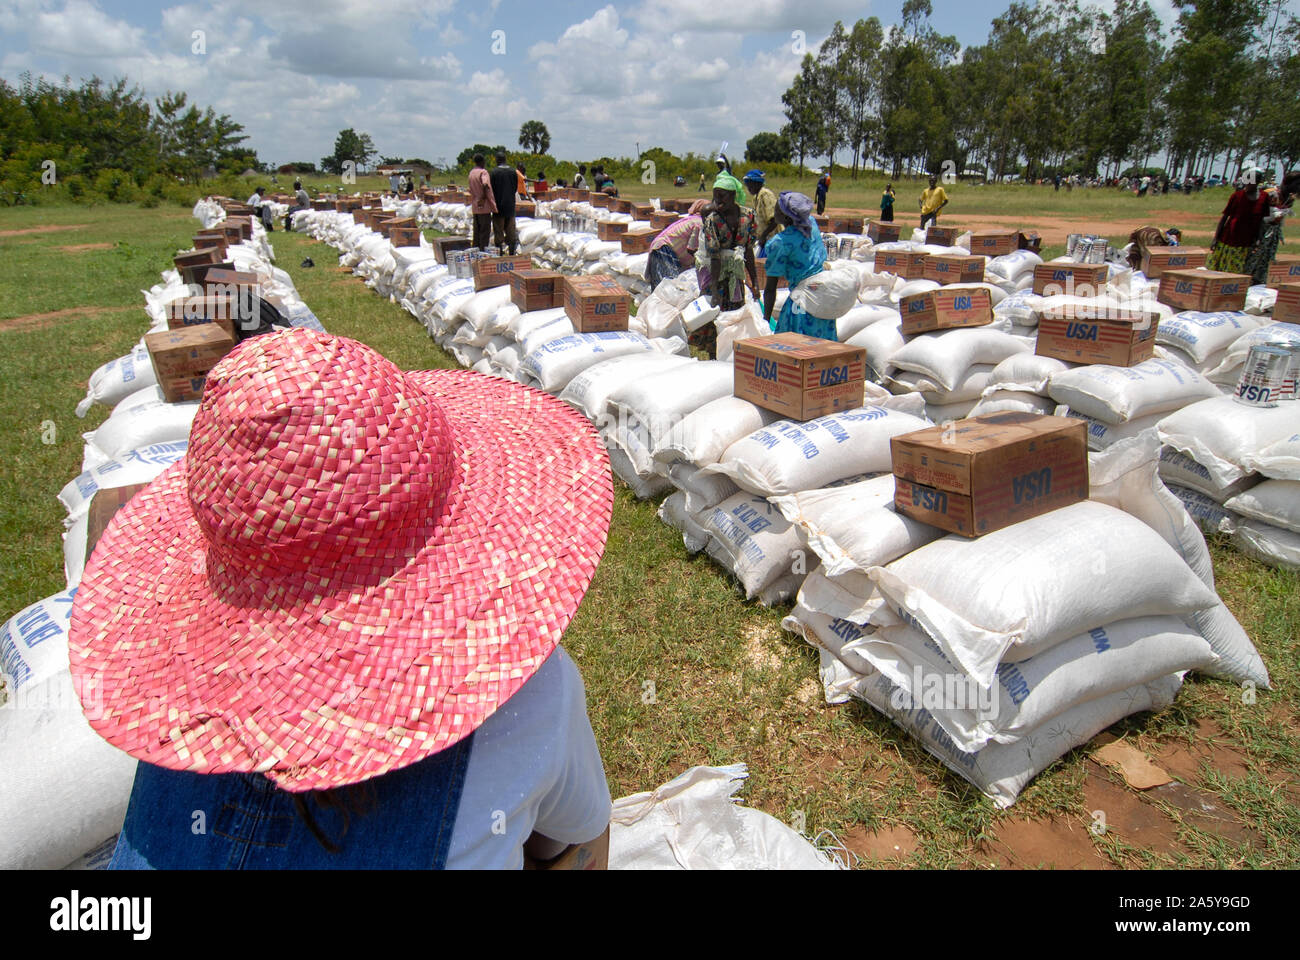 UGANDA, Kitgum , programma alimentare mondiale, distribuzione di mais e lattine USAID con olio vegetale per rifugiati sfollati interni della guerra civile tra LRA e esercito ugandese, donna con cappello di paglia rosso Foto Stock